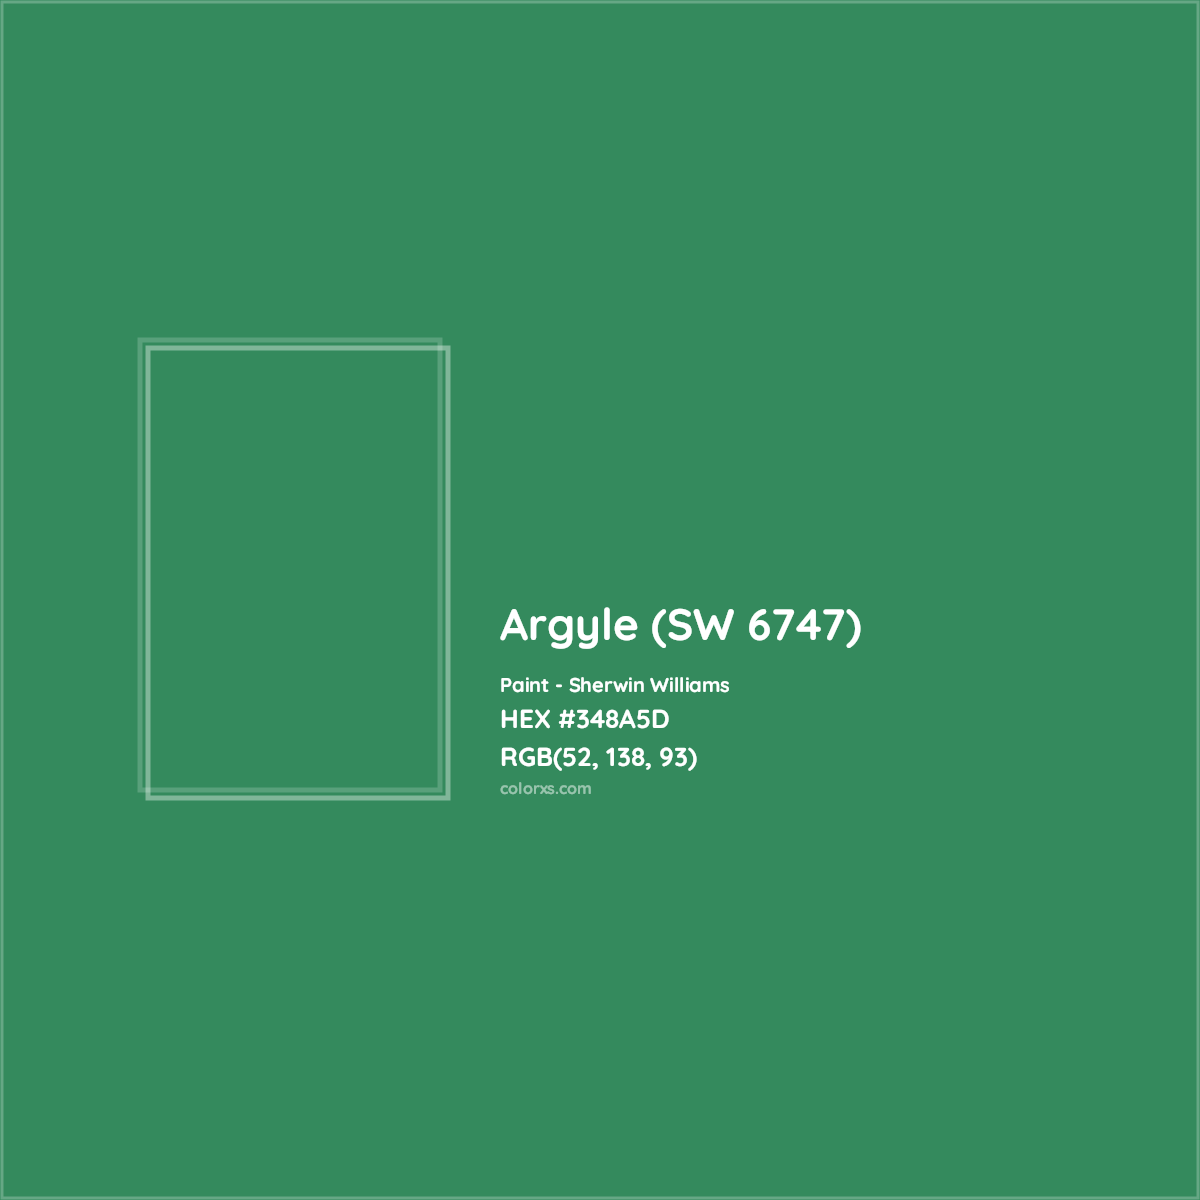 HEX #348A5D Argyle (SW 6747) Paint Sherwin Williams - Color Code